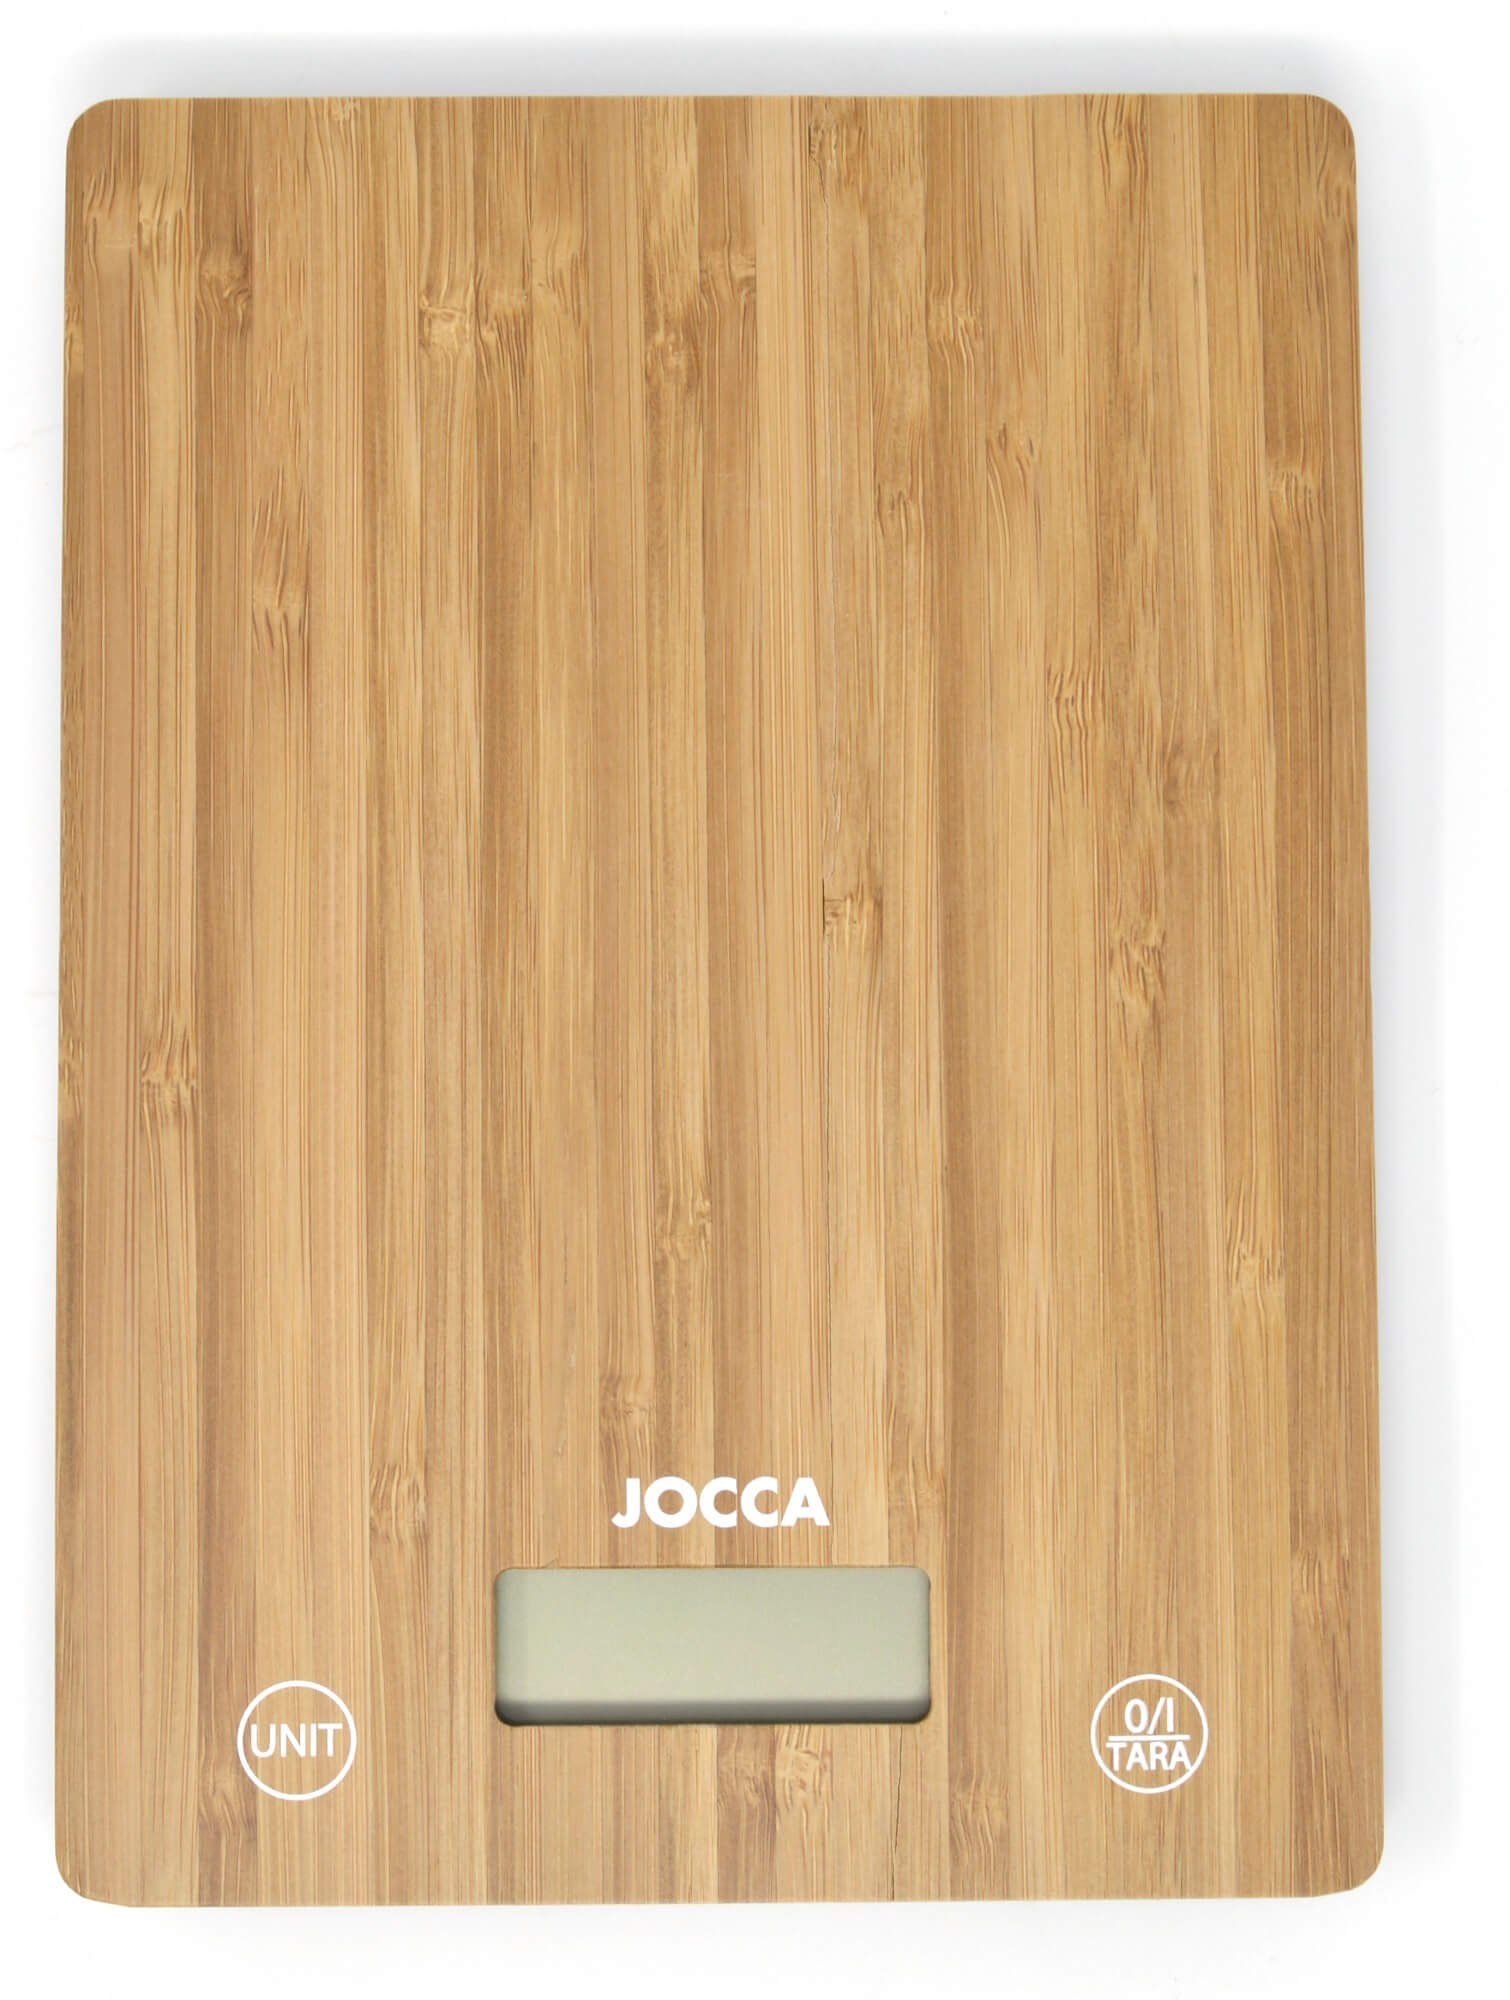 Bambus, Jocca LCD 5 elektronische Küchenwaage aus Display, kg, bis Küchenwaage Tara-Funktion